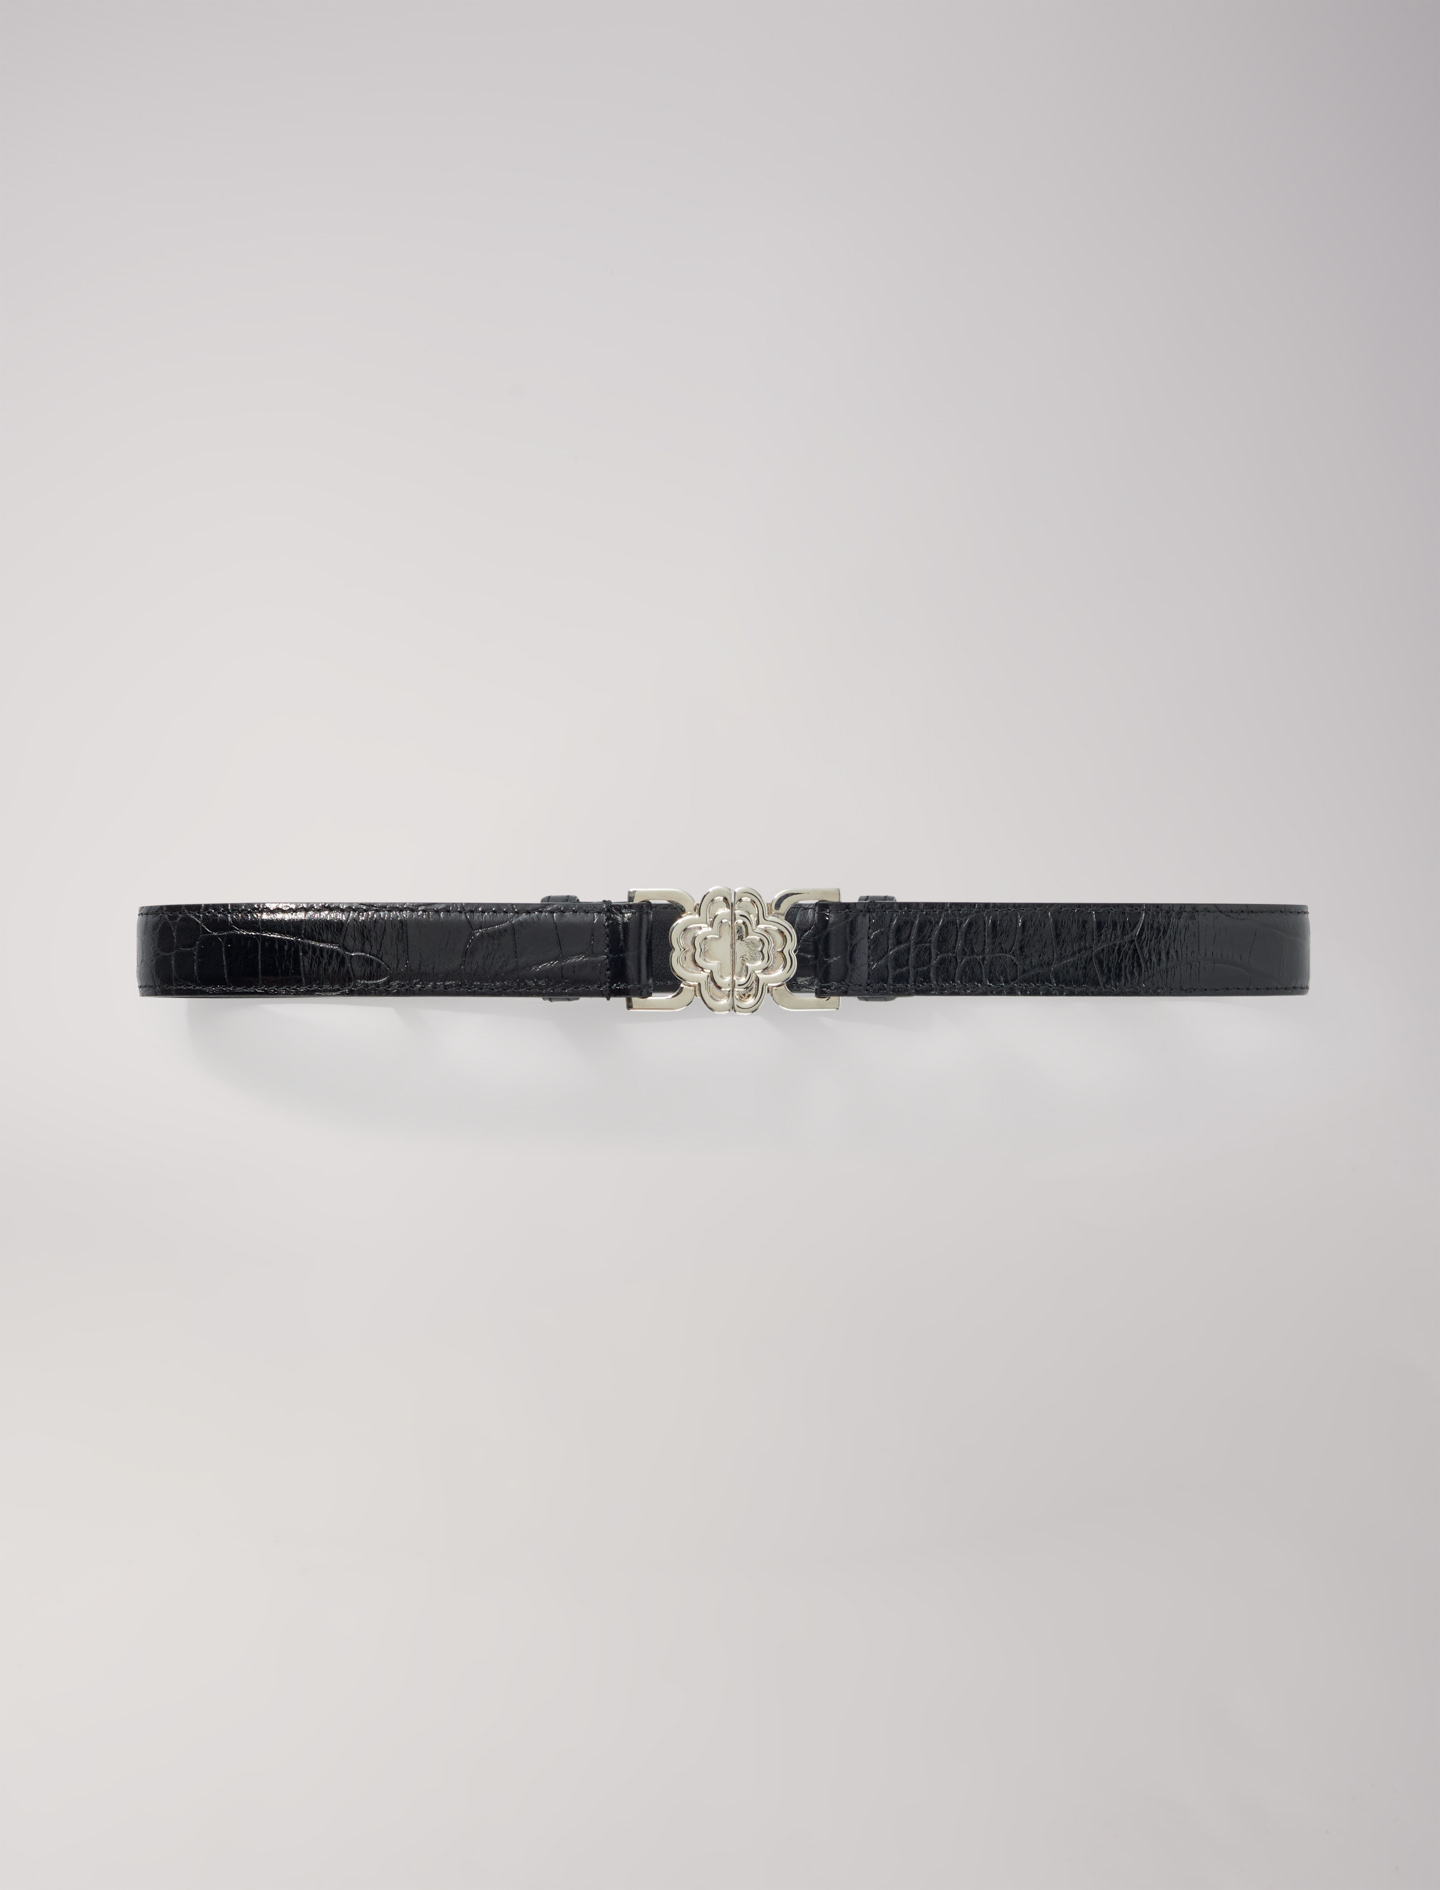 Maje Woman's polyester, Clover buckle belt for Spring/Summer, in color Black / Black